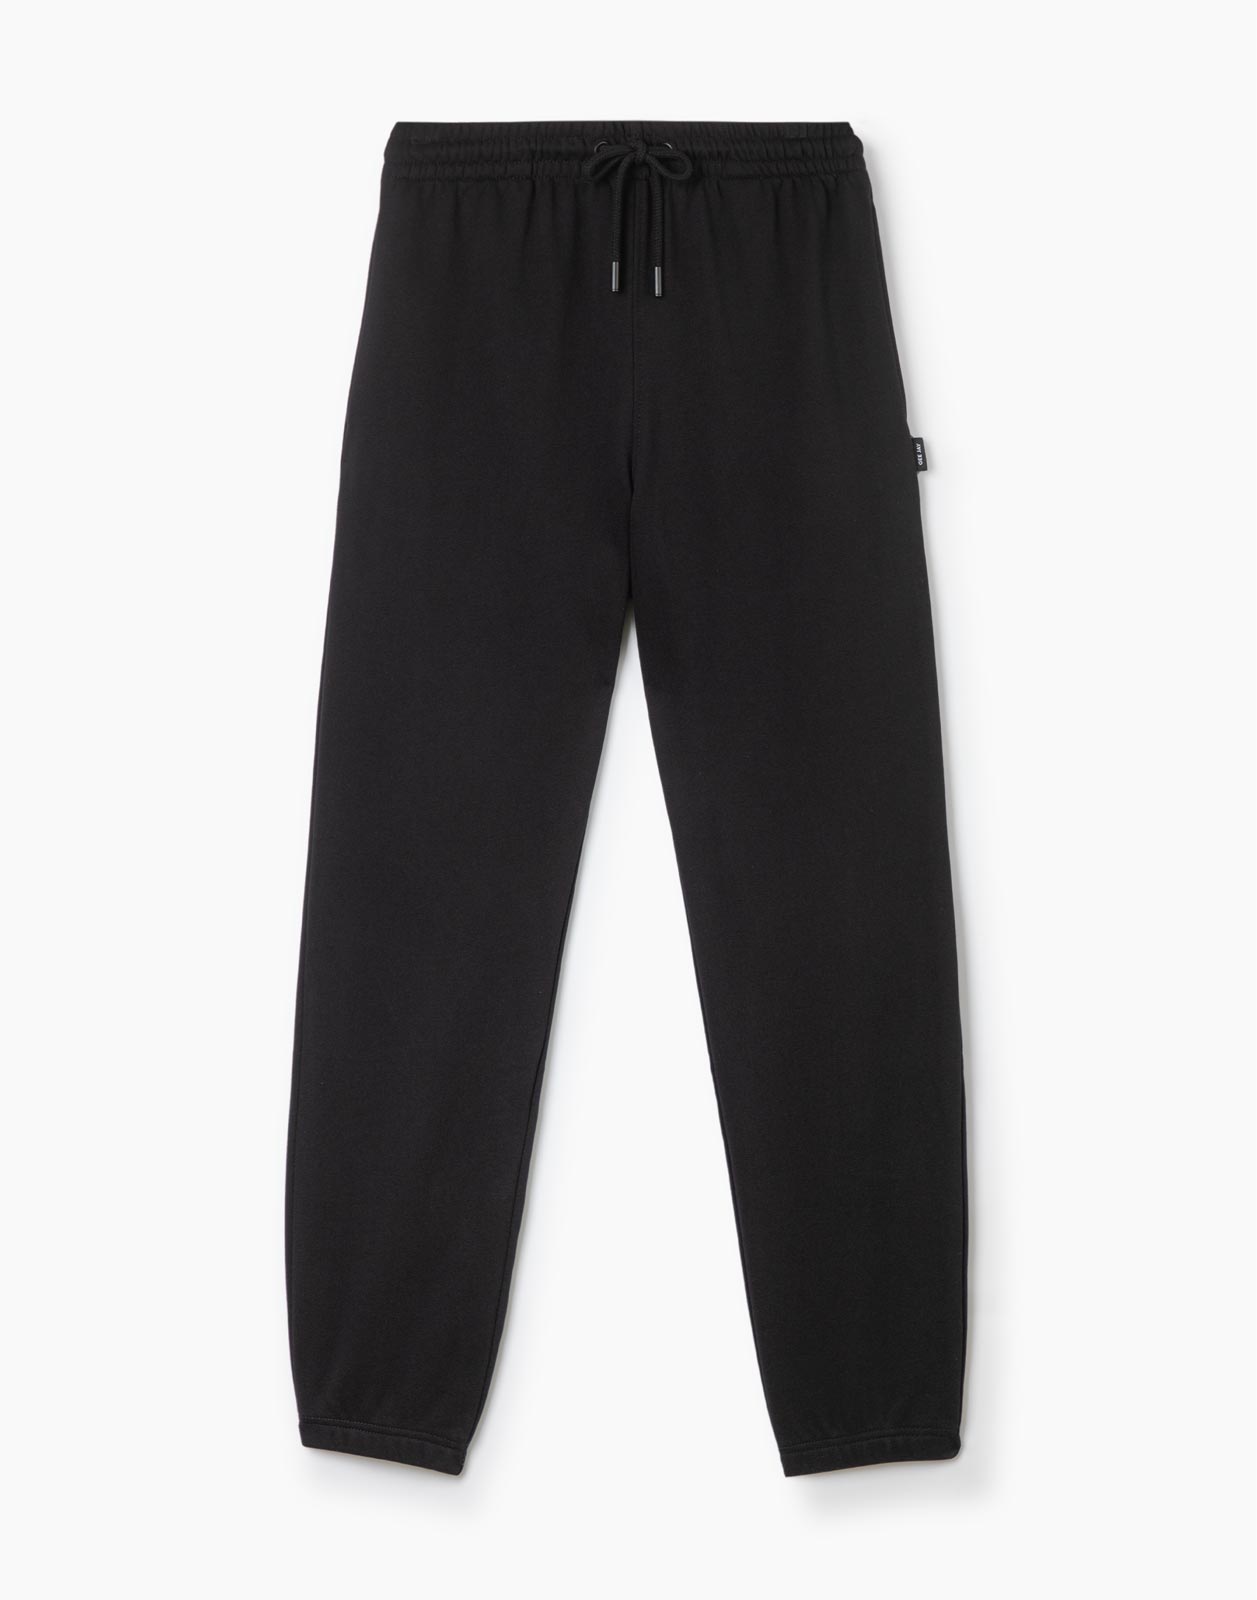 Спортивные брюки мужские Gloria Jeans BAC011399 черные XS/176